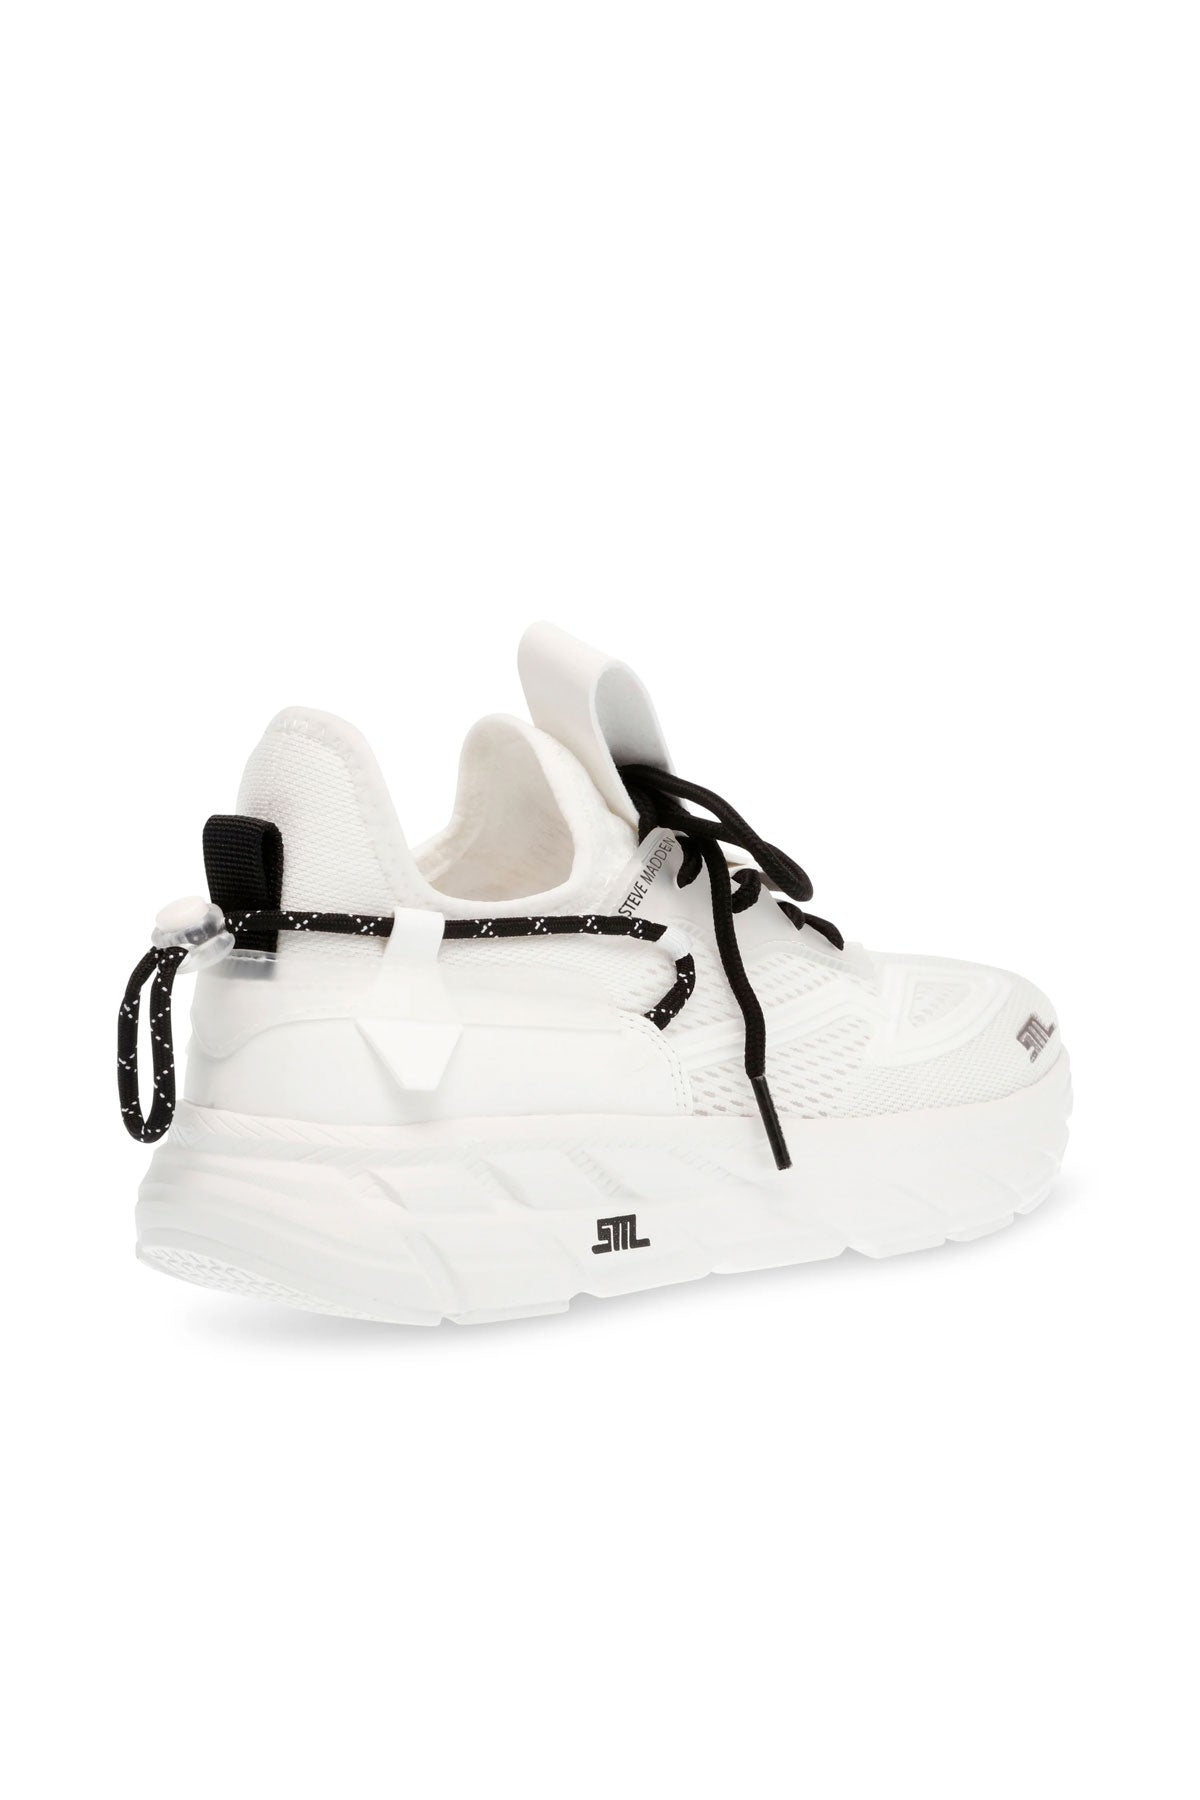 סטיב מאדן נעלי ספורט Propel בצבע לבן לנשים-Steve Madden-36-נאקו